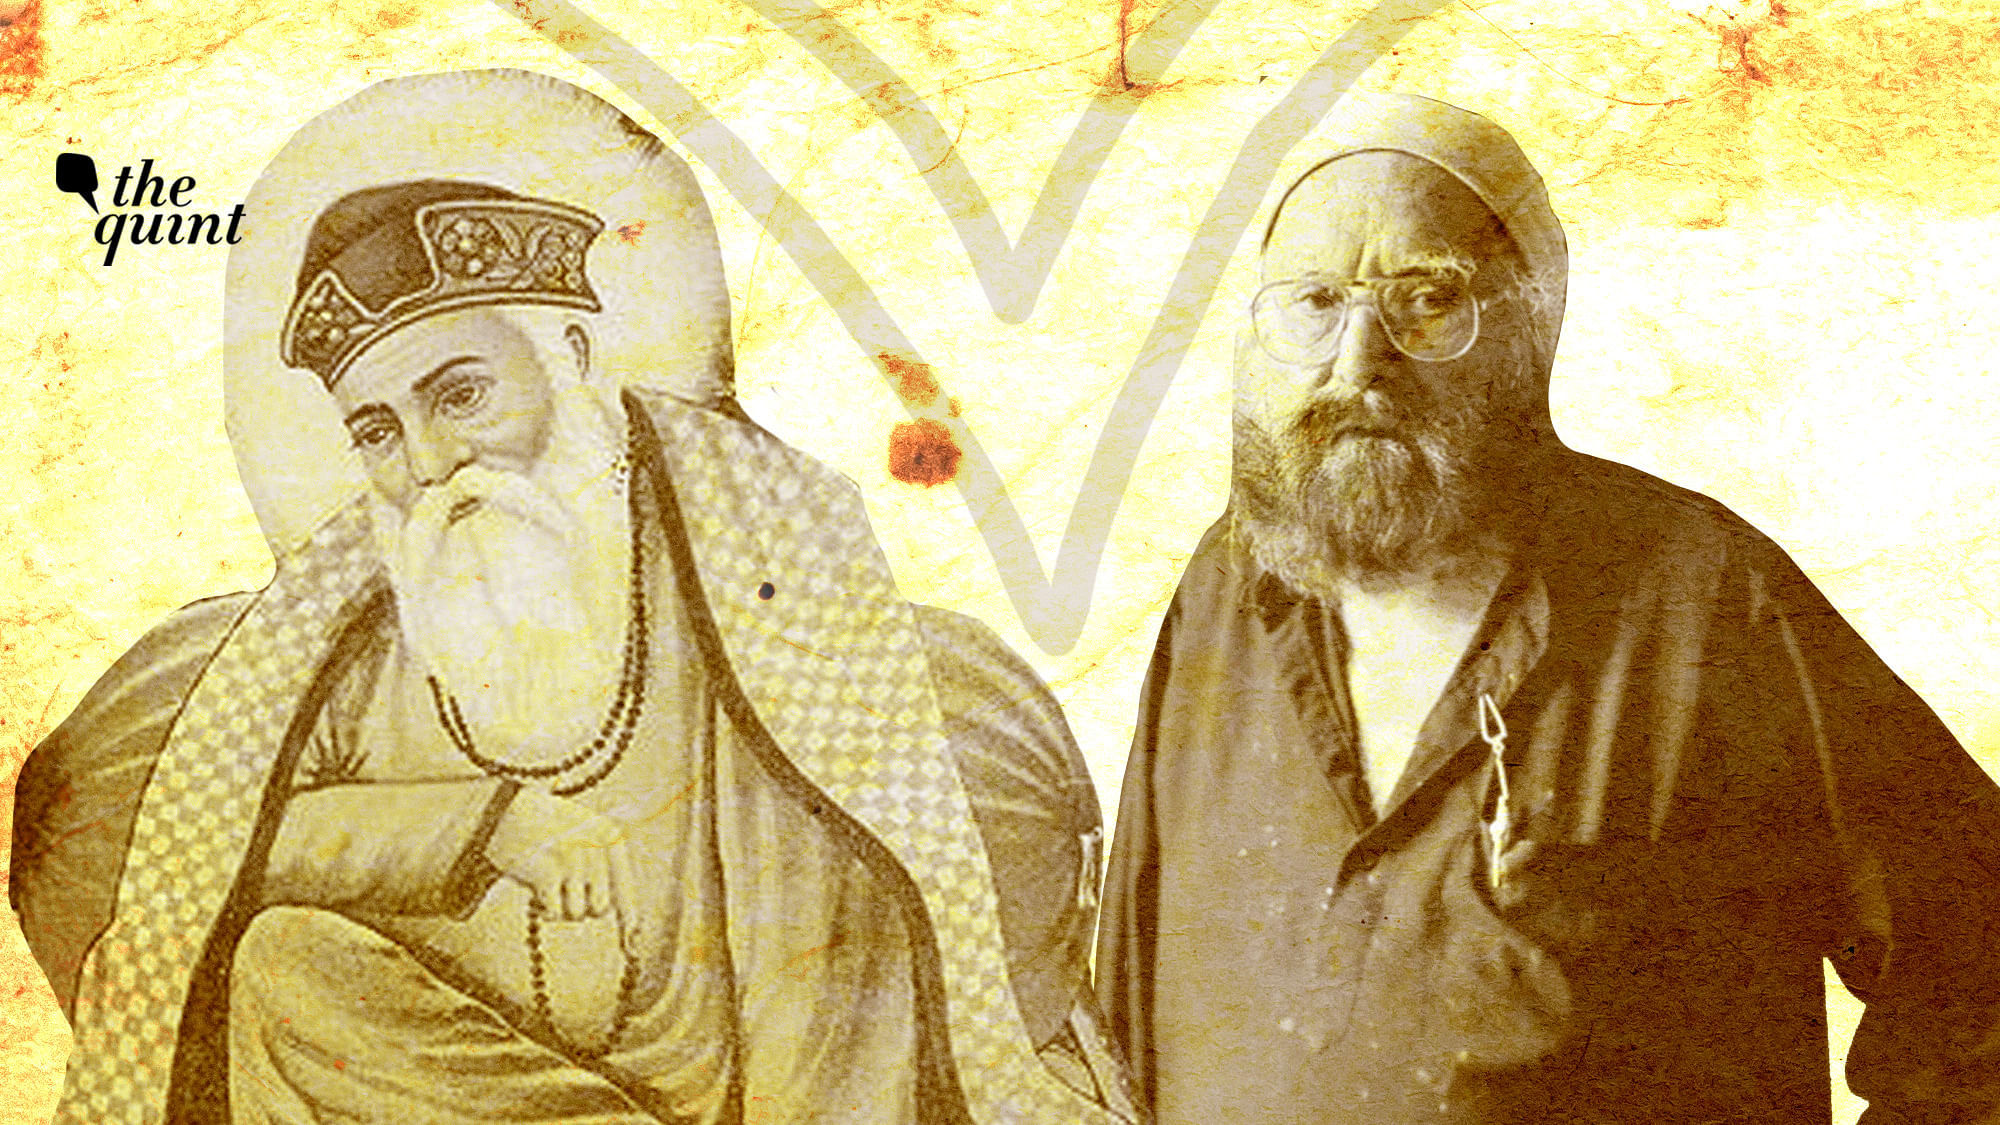 Image of Guru Nanak (L) and late writer Khushwant Singh (R) used for representational purposes.